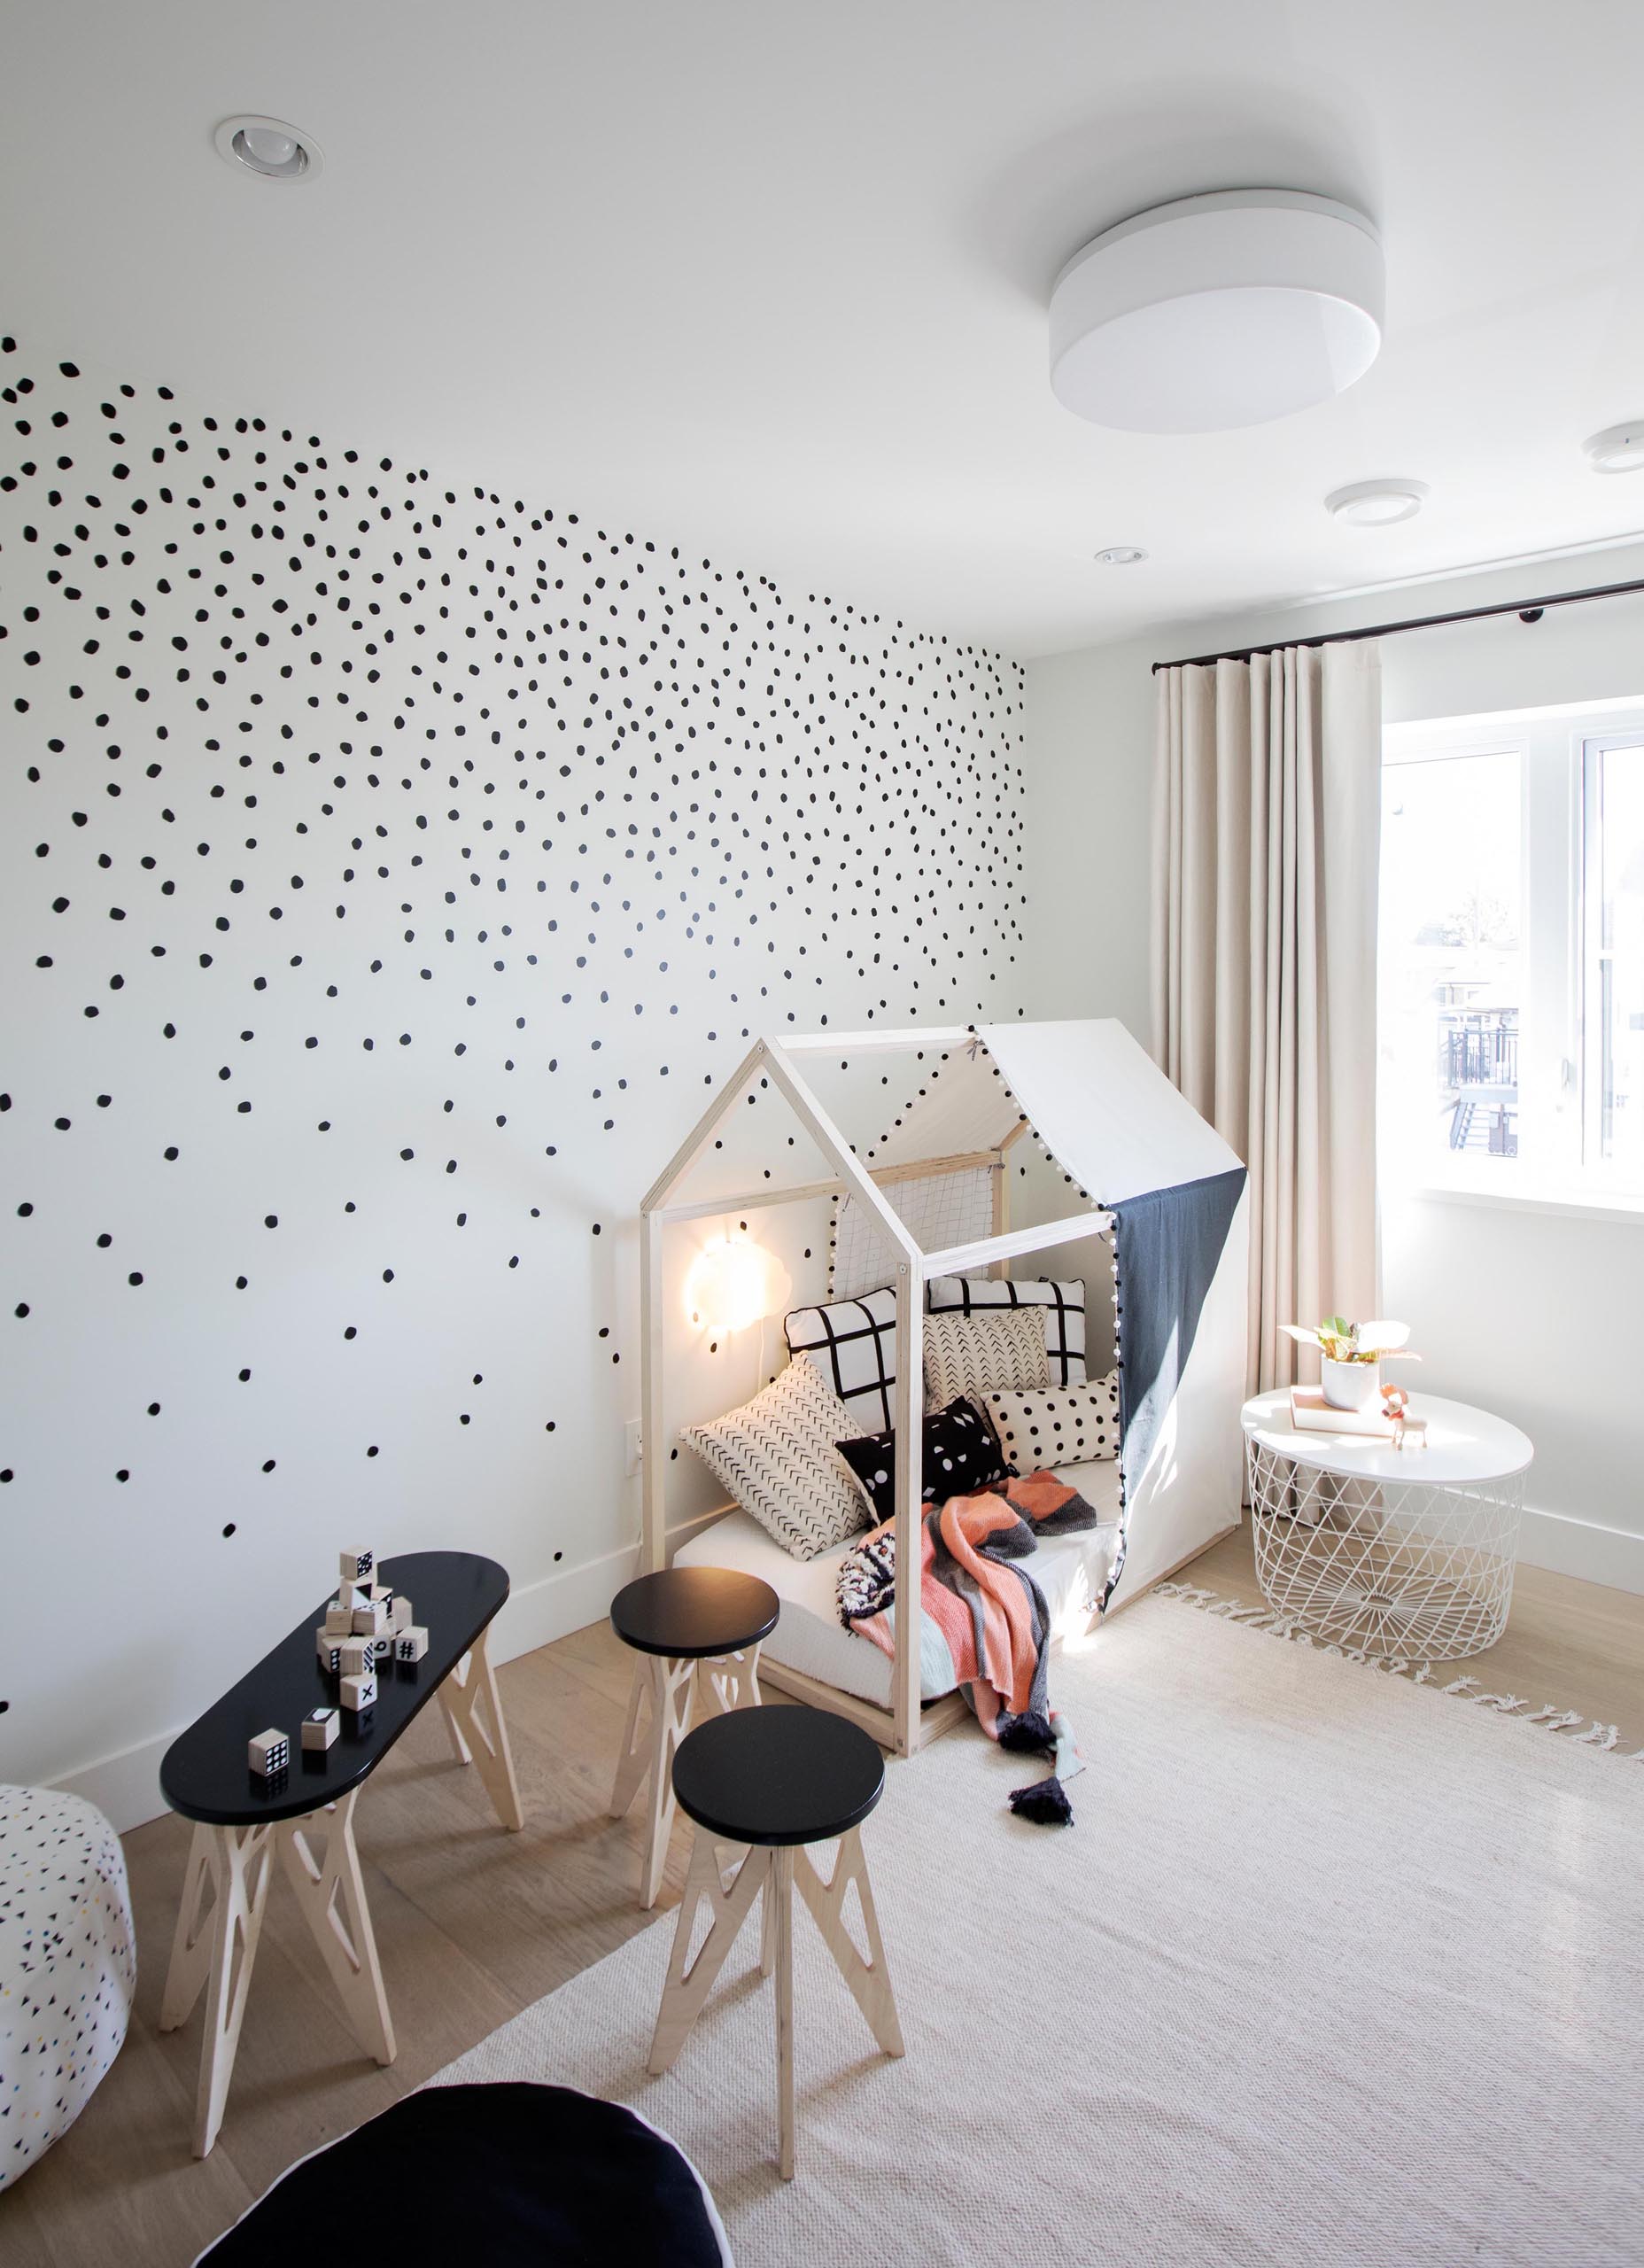 Современная детская спальня имеет игривый вид, с узором в горошек на стенах, небольшой палаткой и детской мебелью со столом, стульями и пуфами.